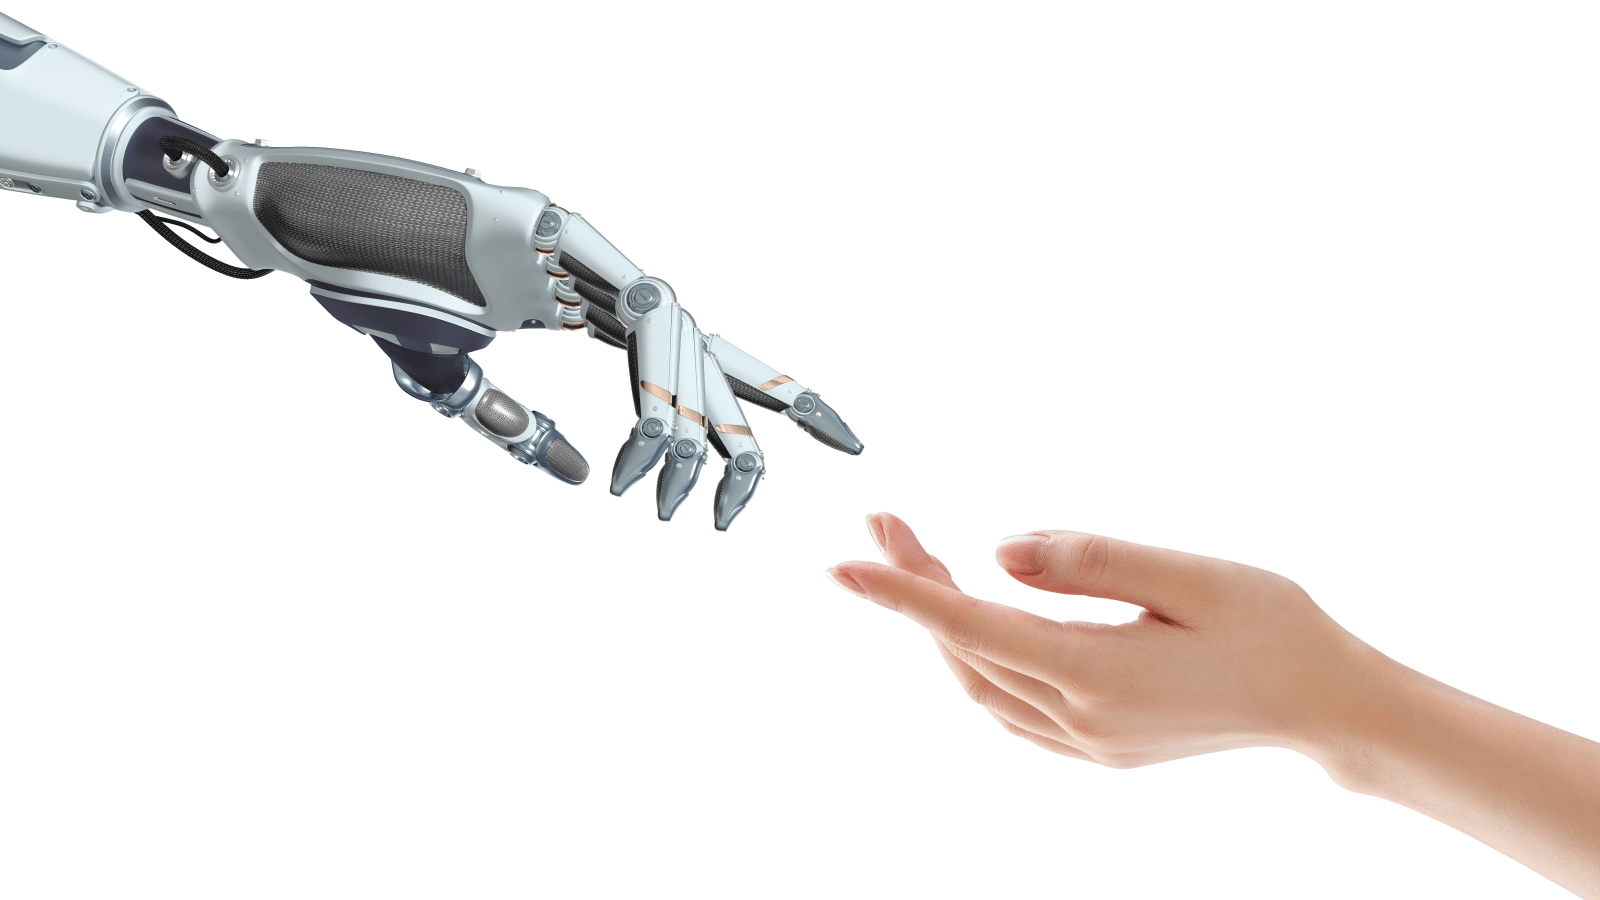 Cum să automatizezi deciziile bazate pe inteligență artificială în mod responsabil și cu încredere